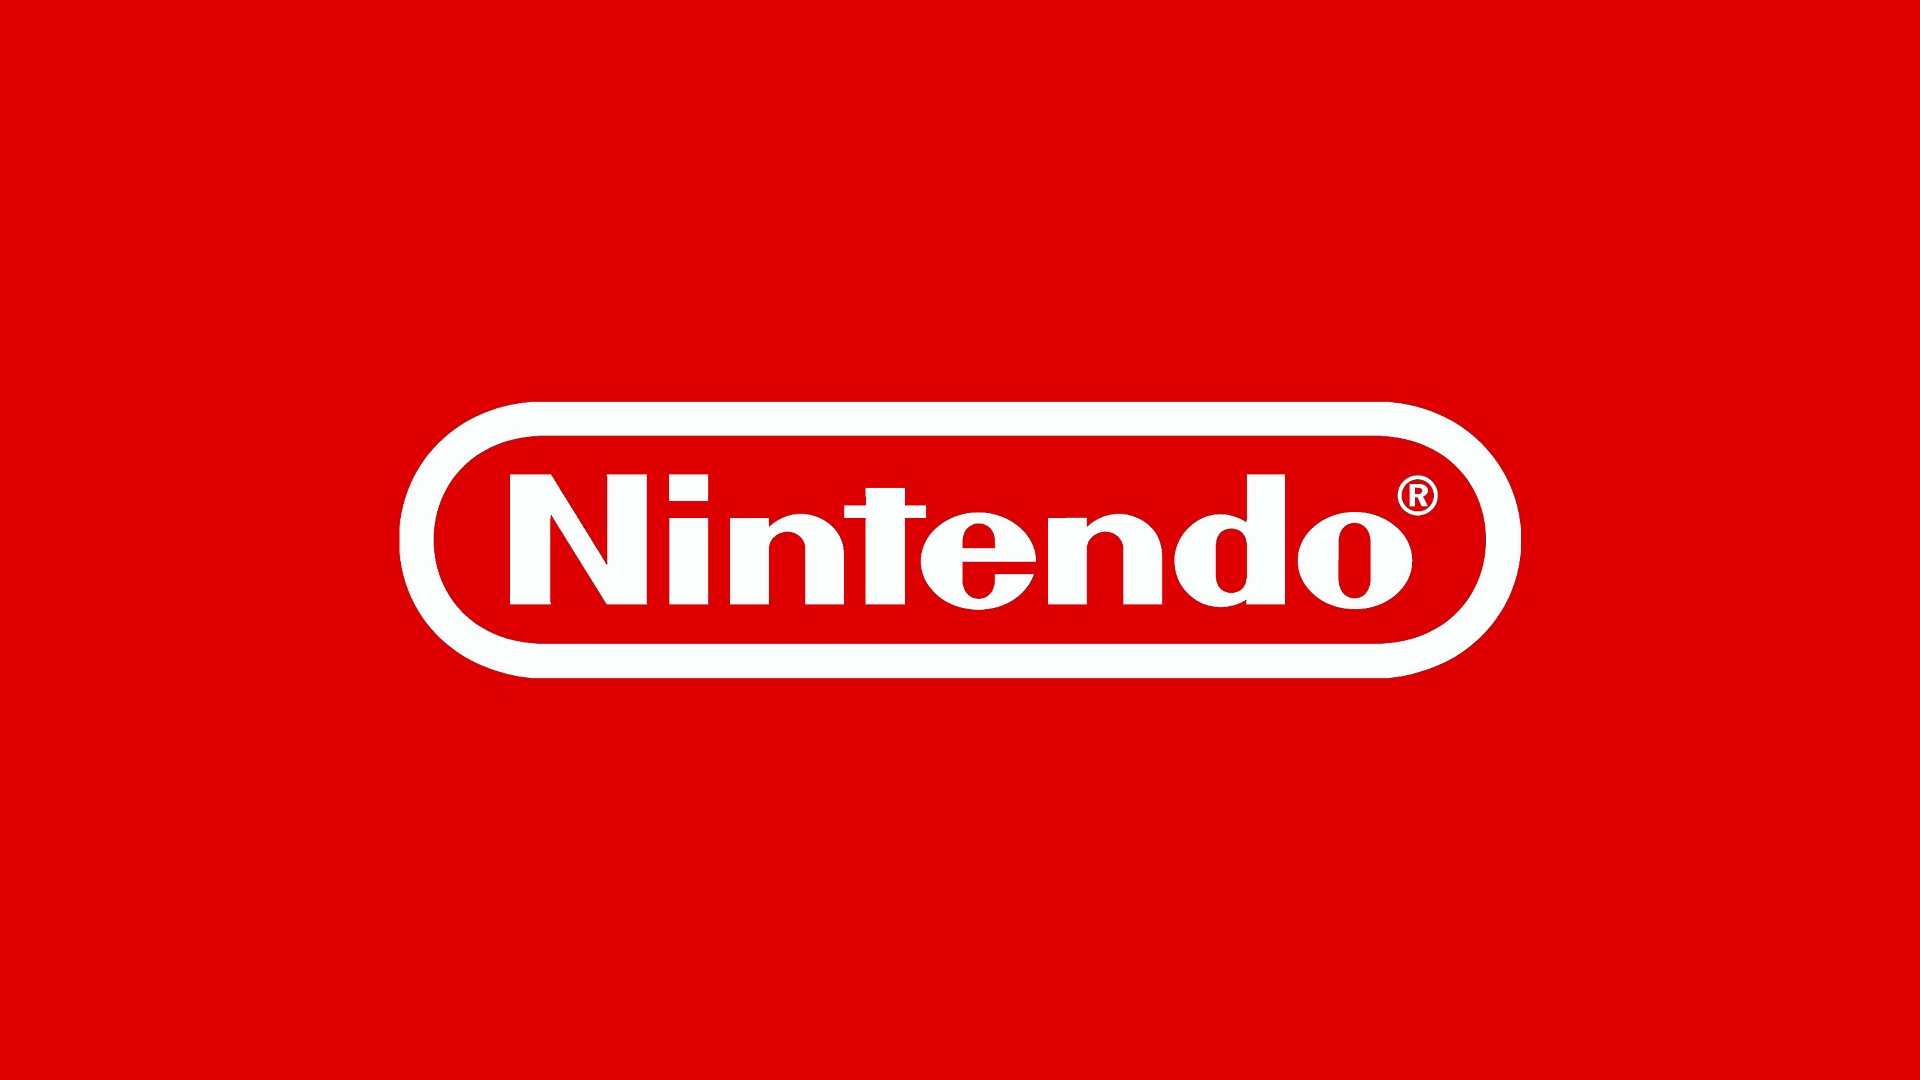 Nintendo logotip